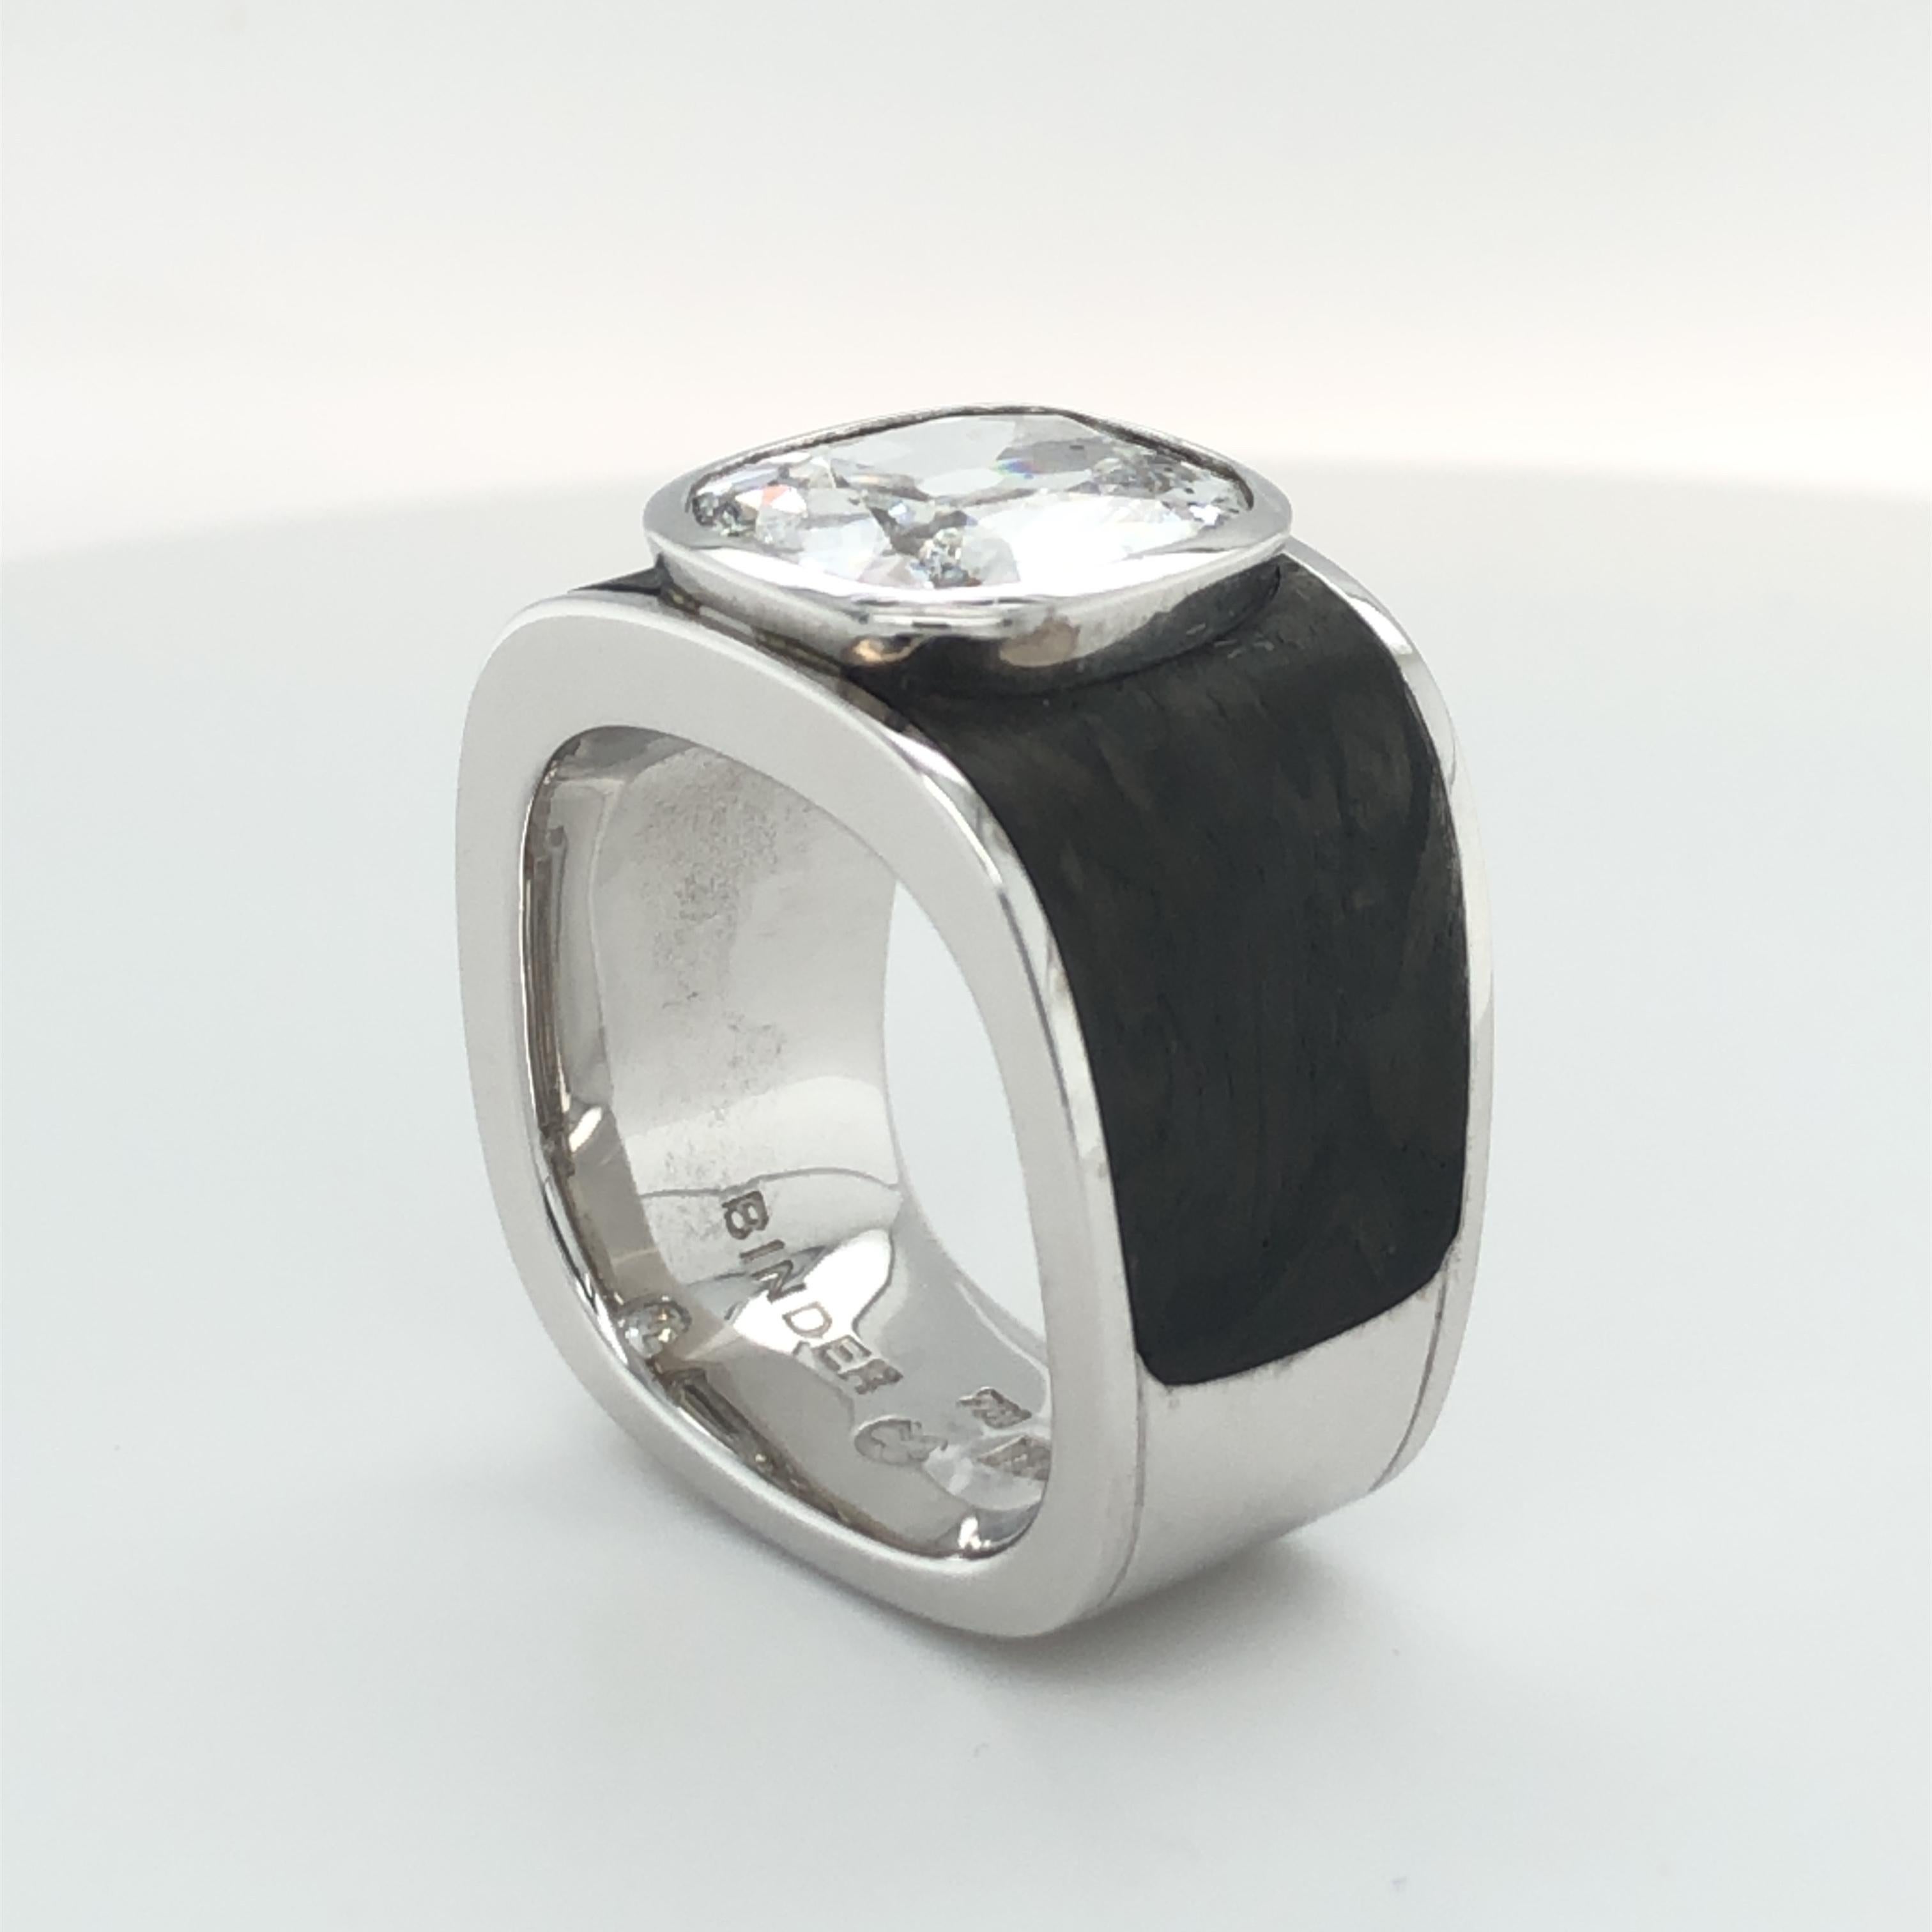 Binder Moerisch 3.41 Carat Diamond Ring in 18 Karat White Gold and Carbon 3